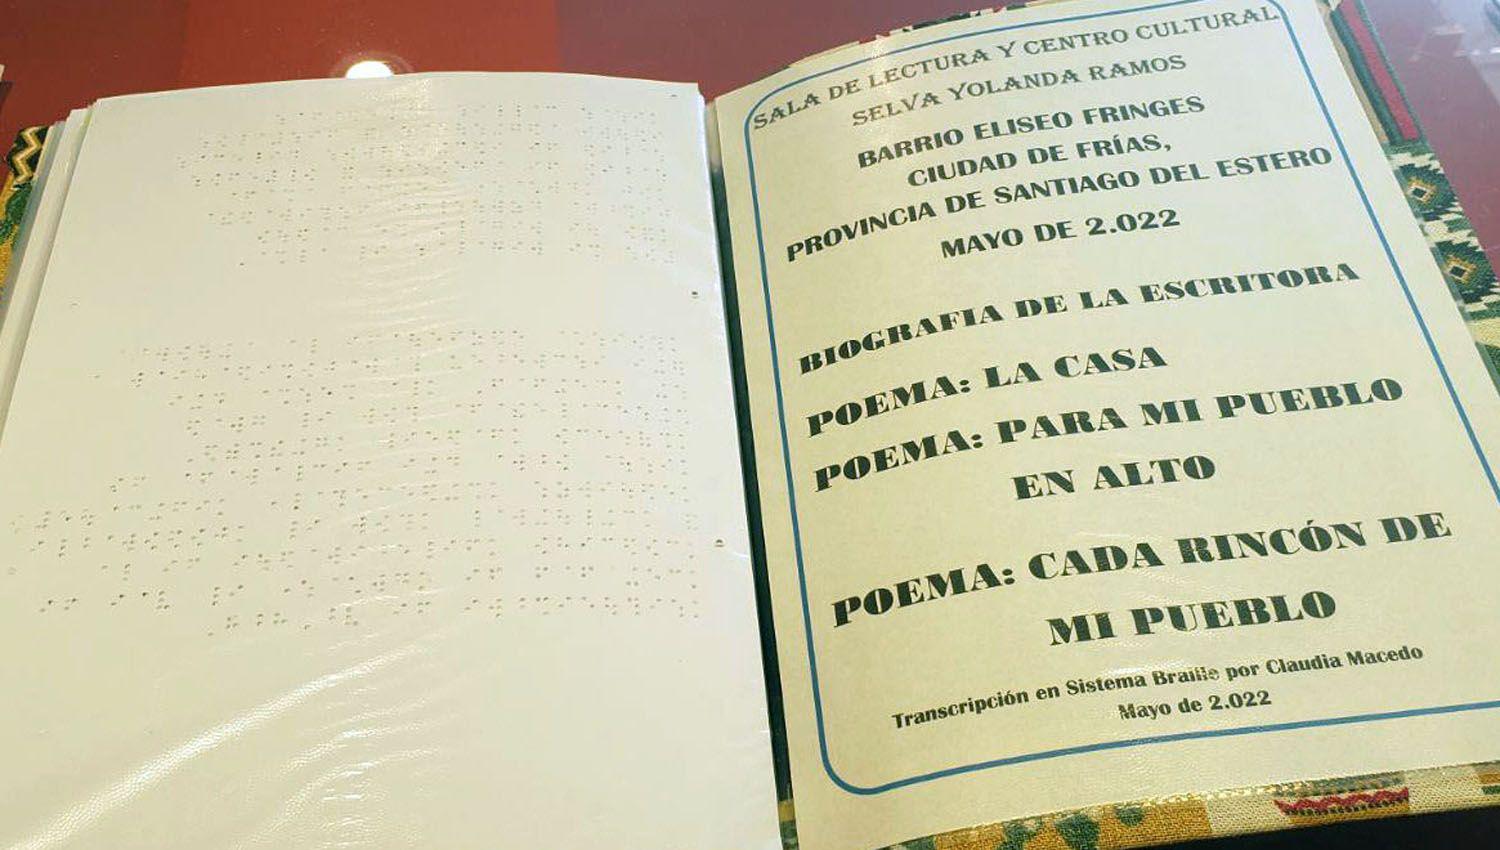 La biografiacutea y varios poemas de Pocha Ramos fueron escritos en Braille